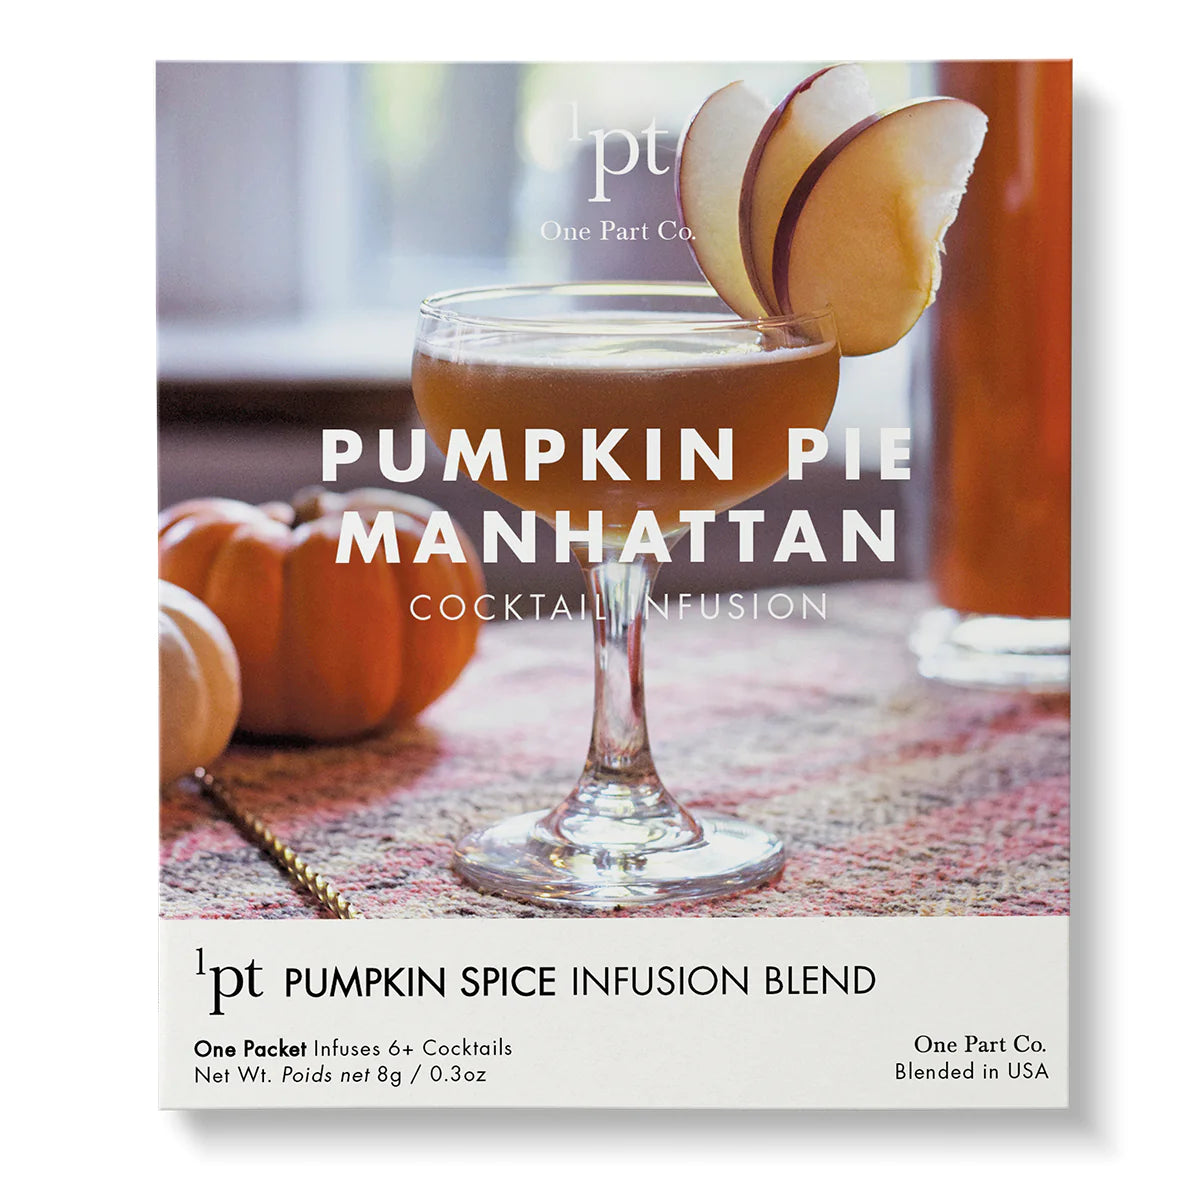 1pt Cocktail Pack - Pumpkin Pie Manhattan